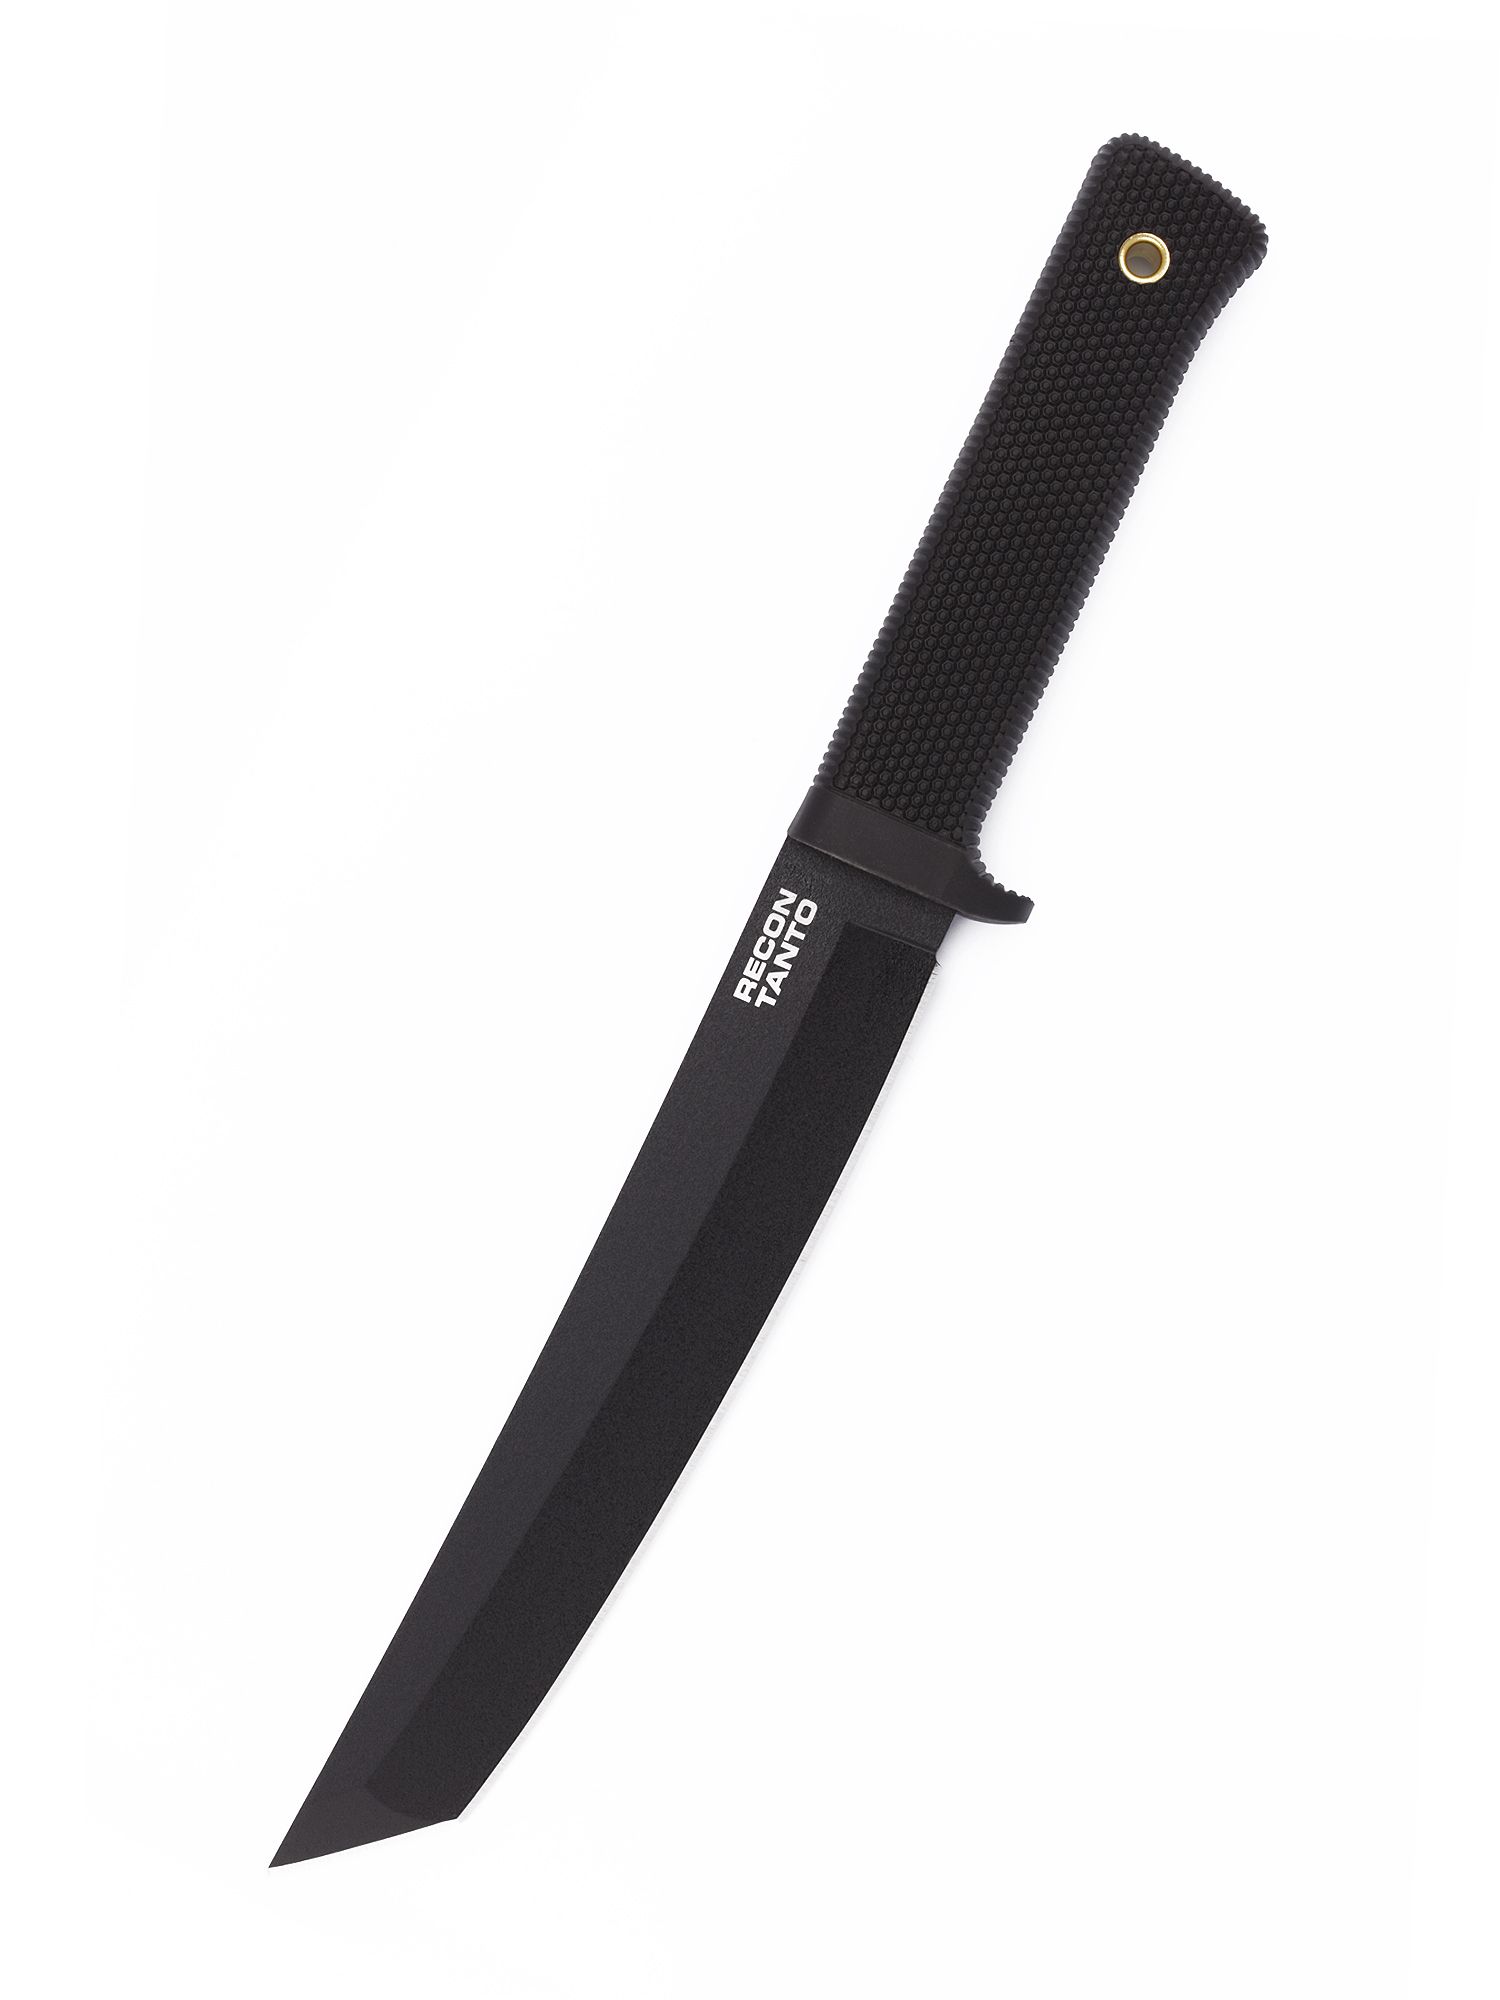 Туристический нож Cold Steel Recon Tanto SK-5, black